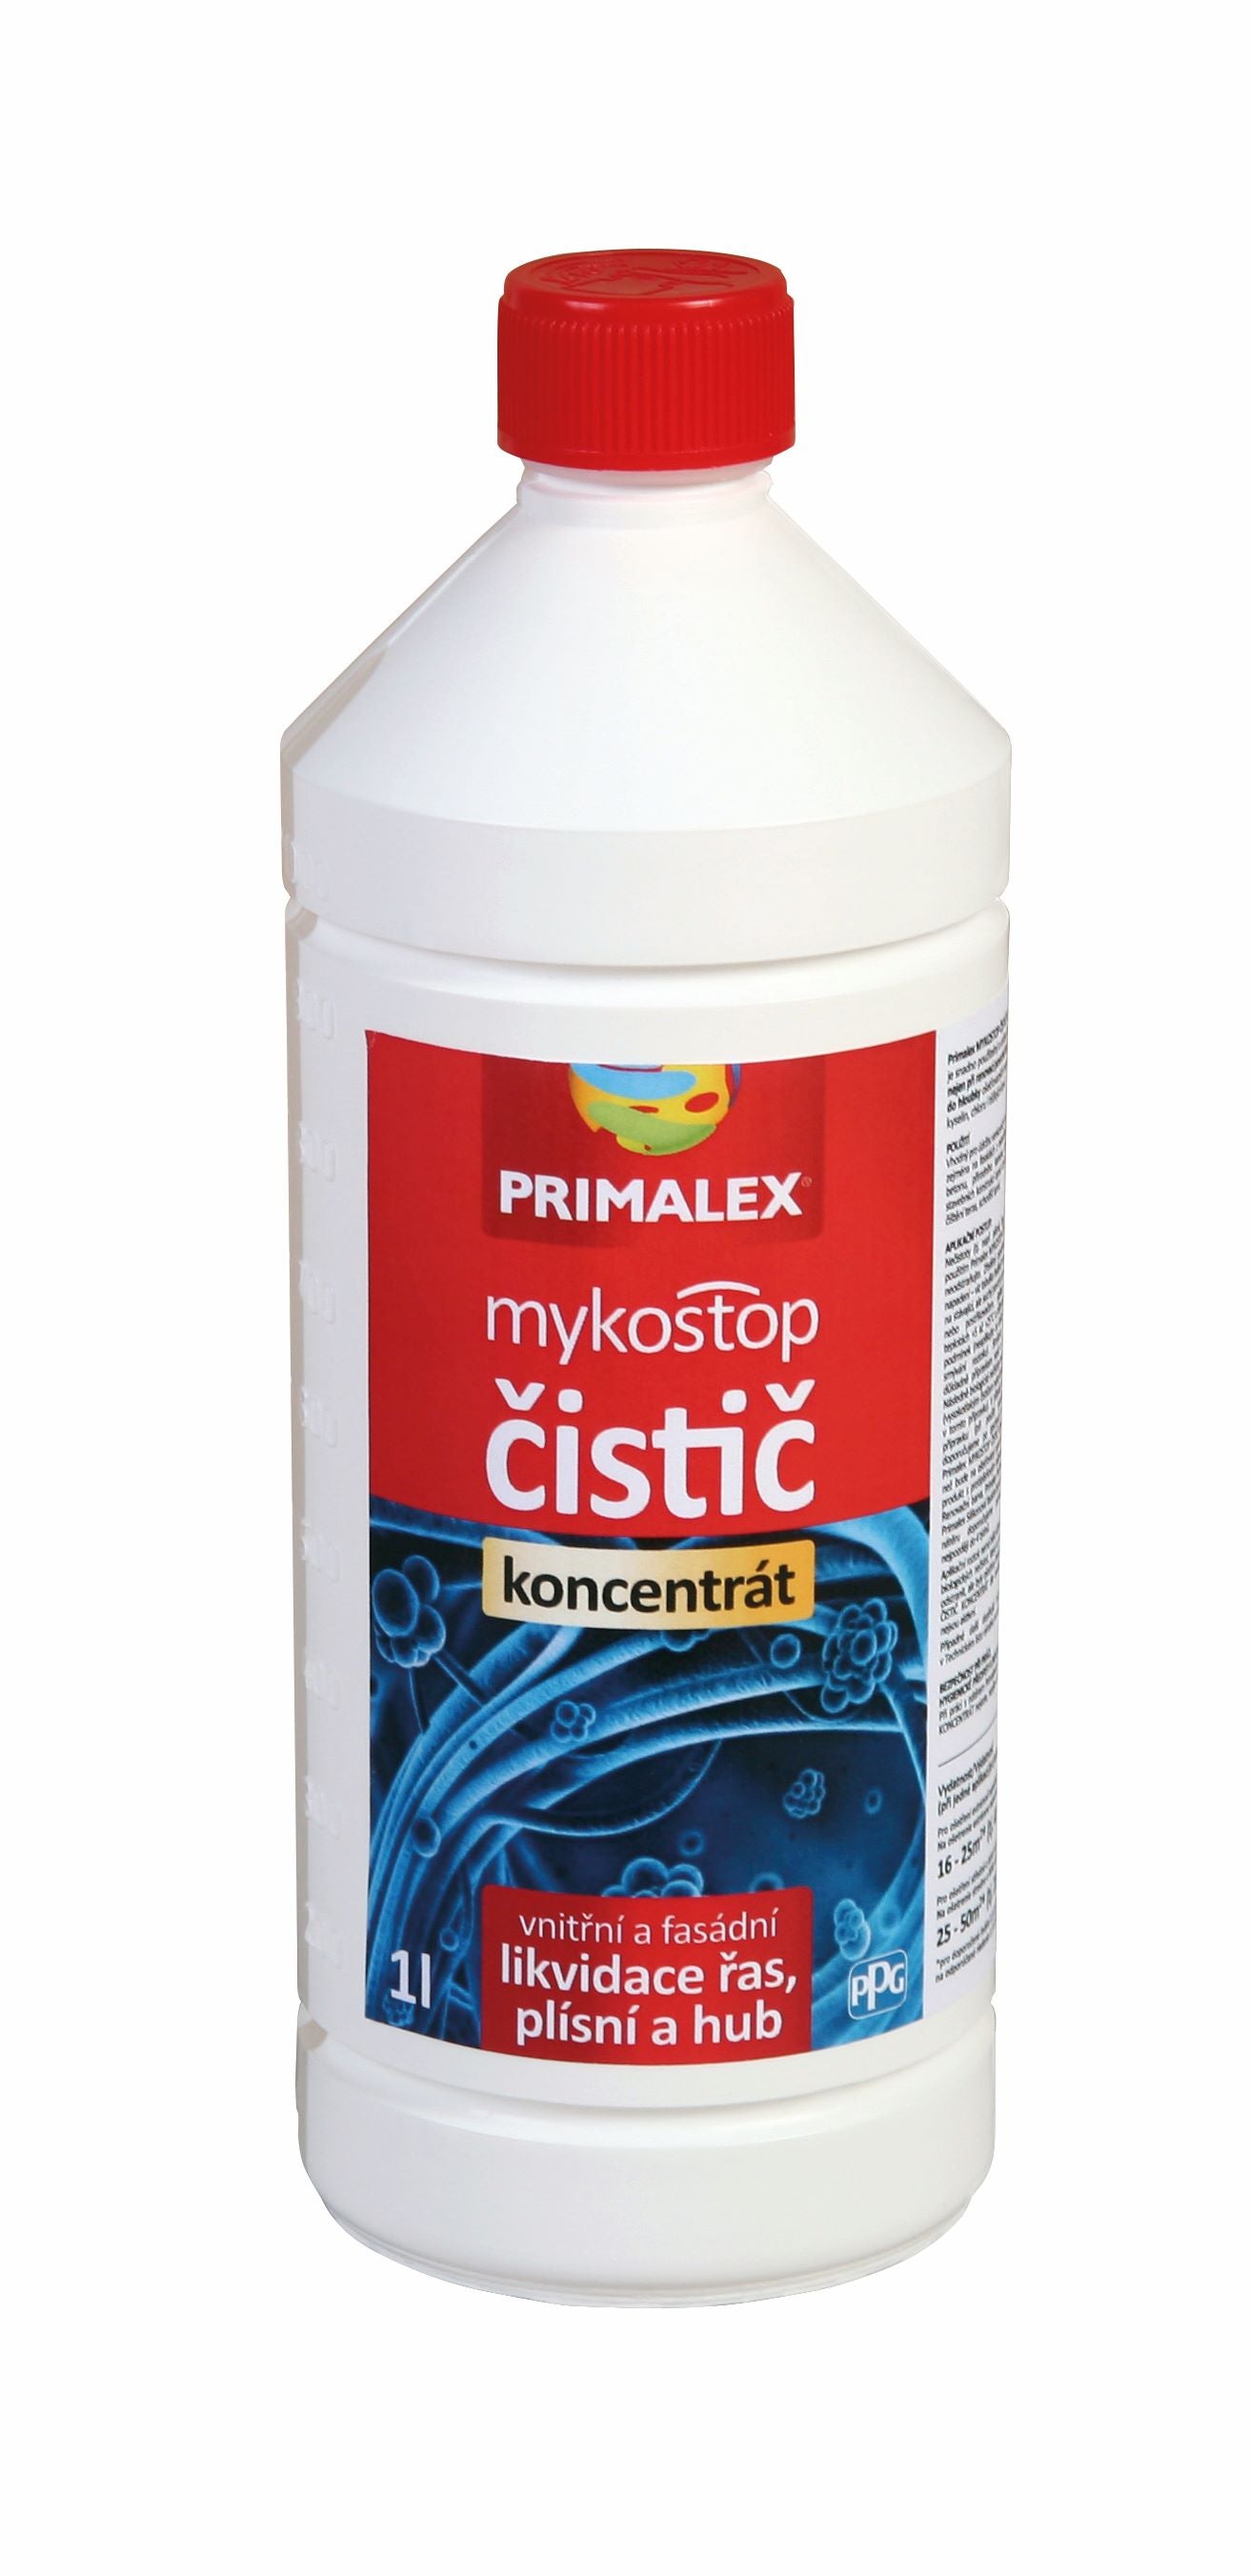 PRIMALEX mykostop čistič koncentrát